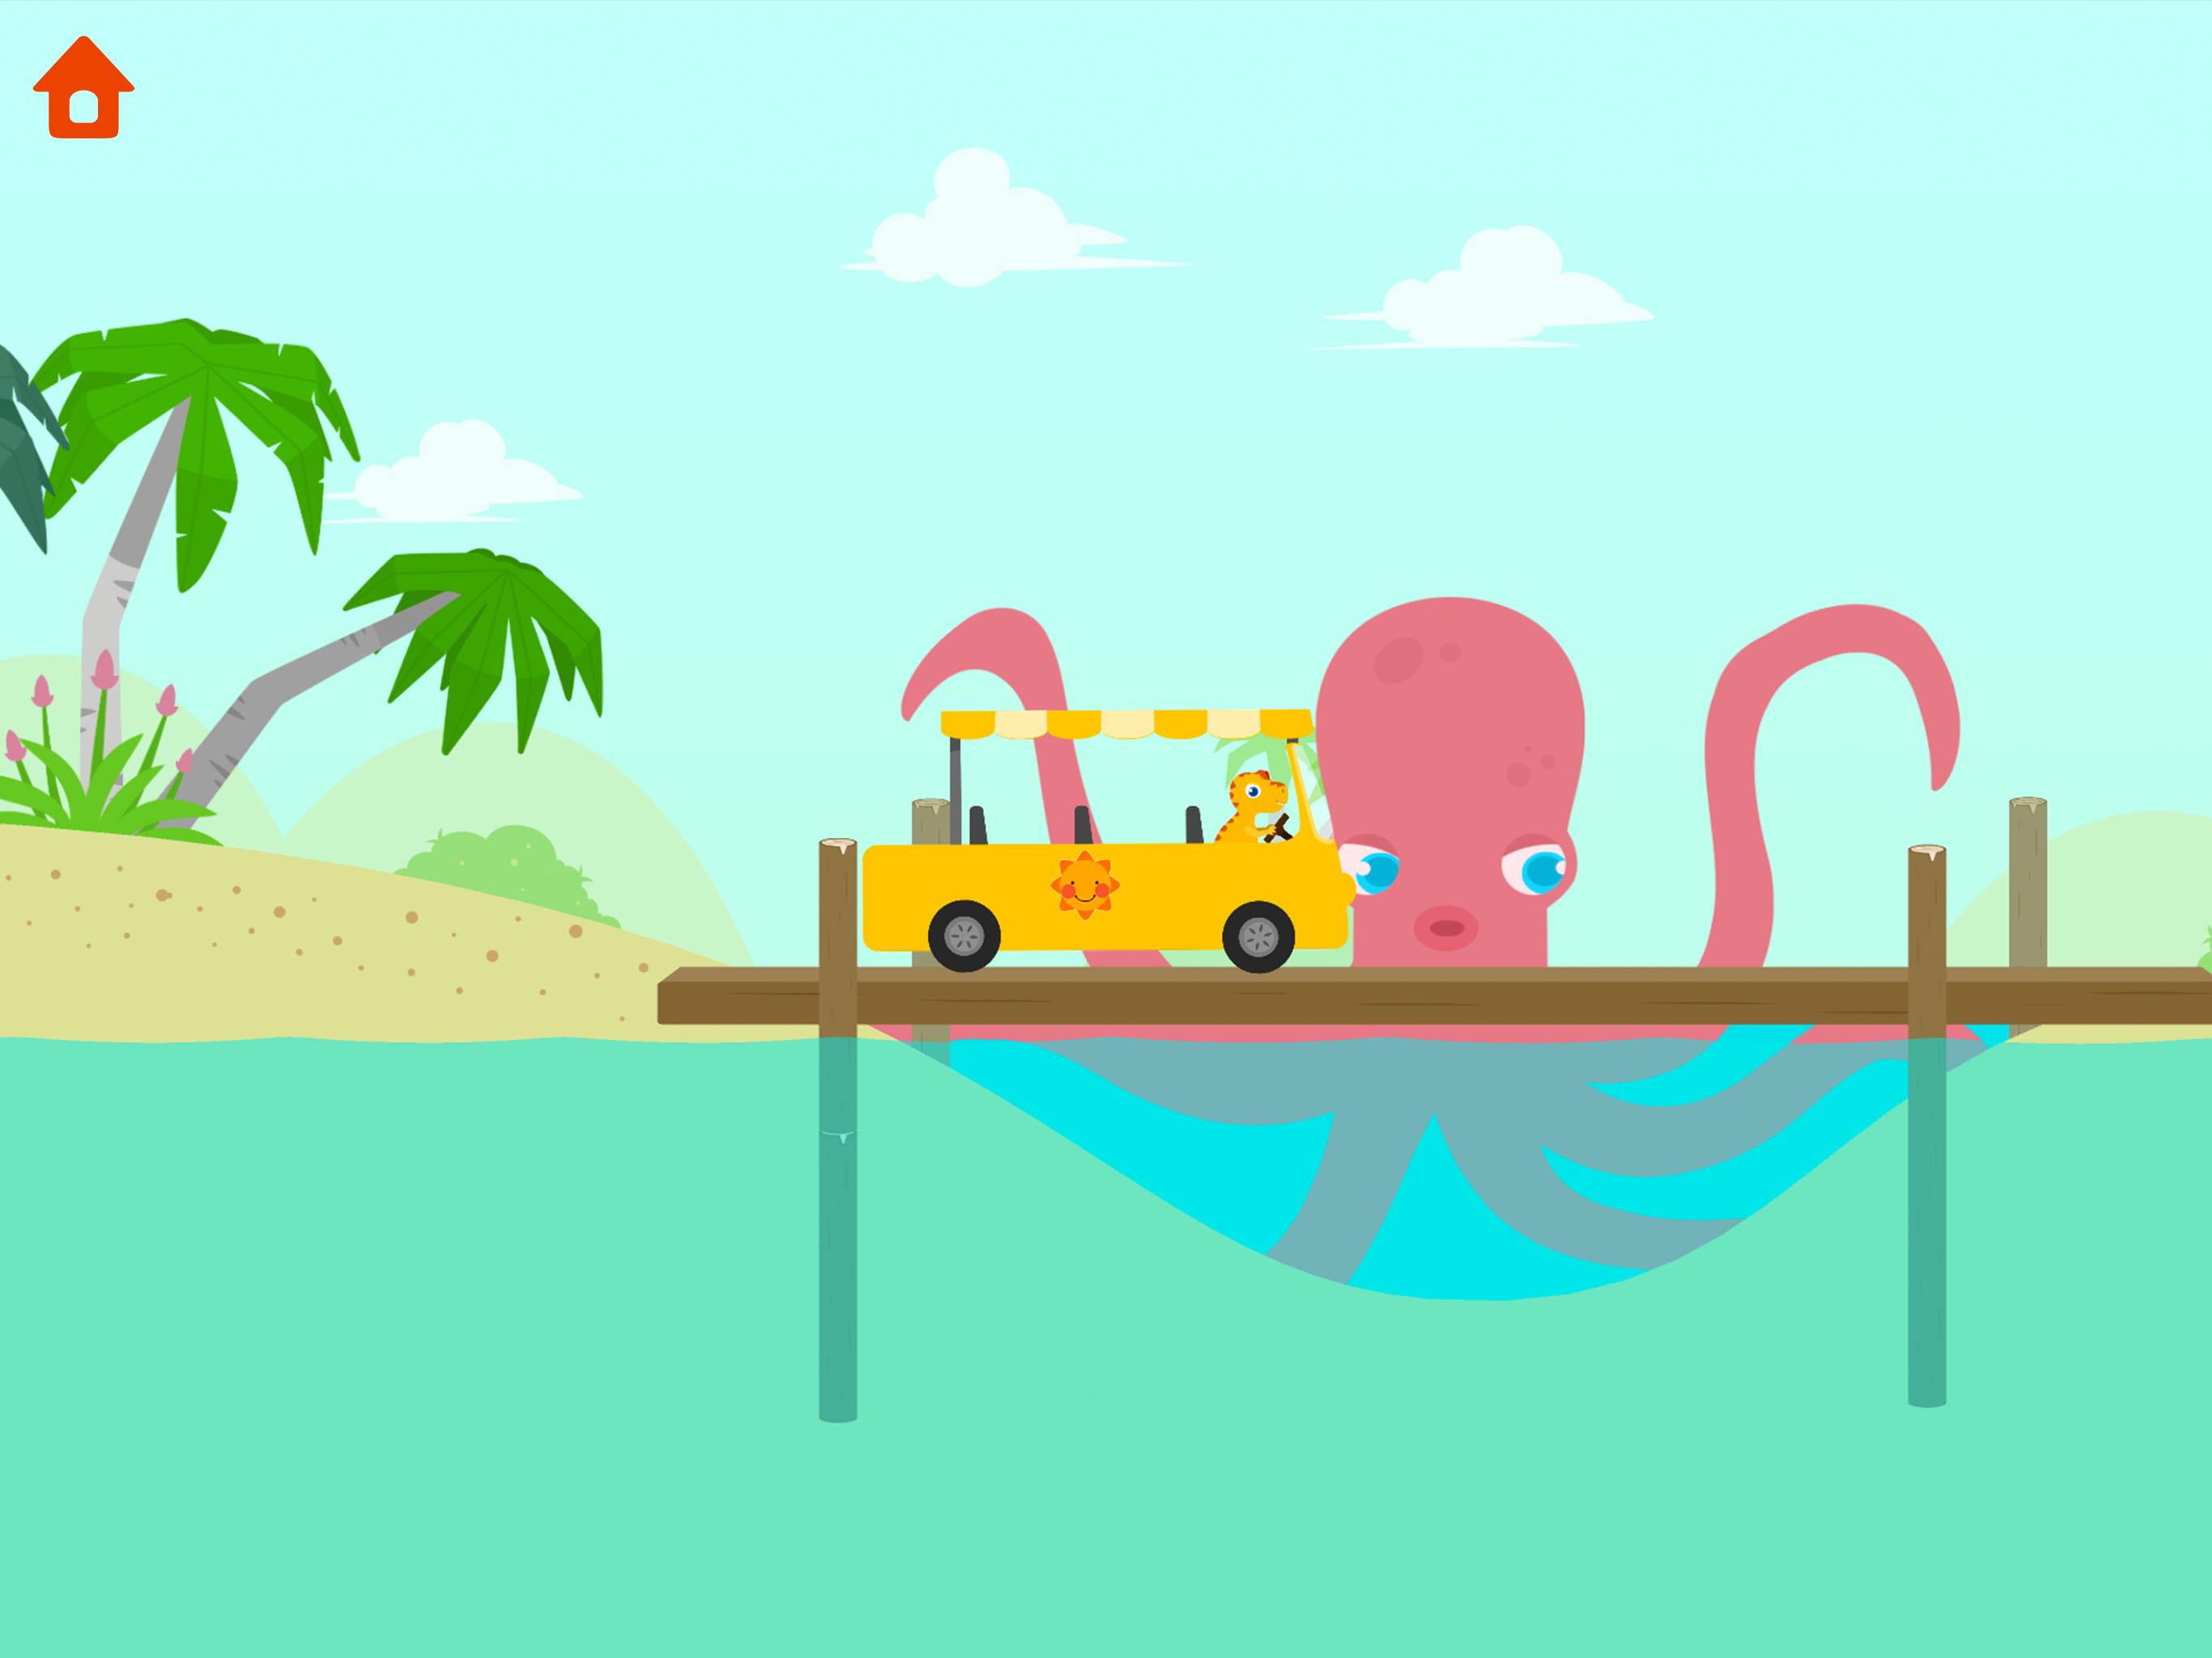 Dinosaur Bus - Create a Car! Games for kids 1.0.7 Screenshot 21